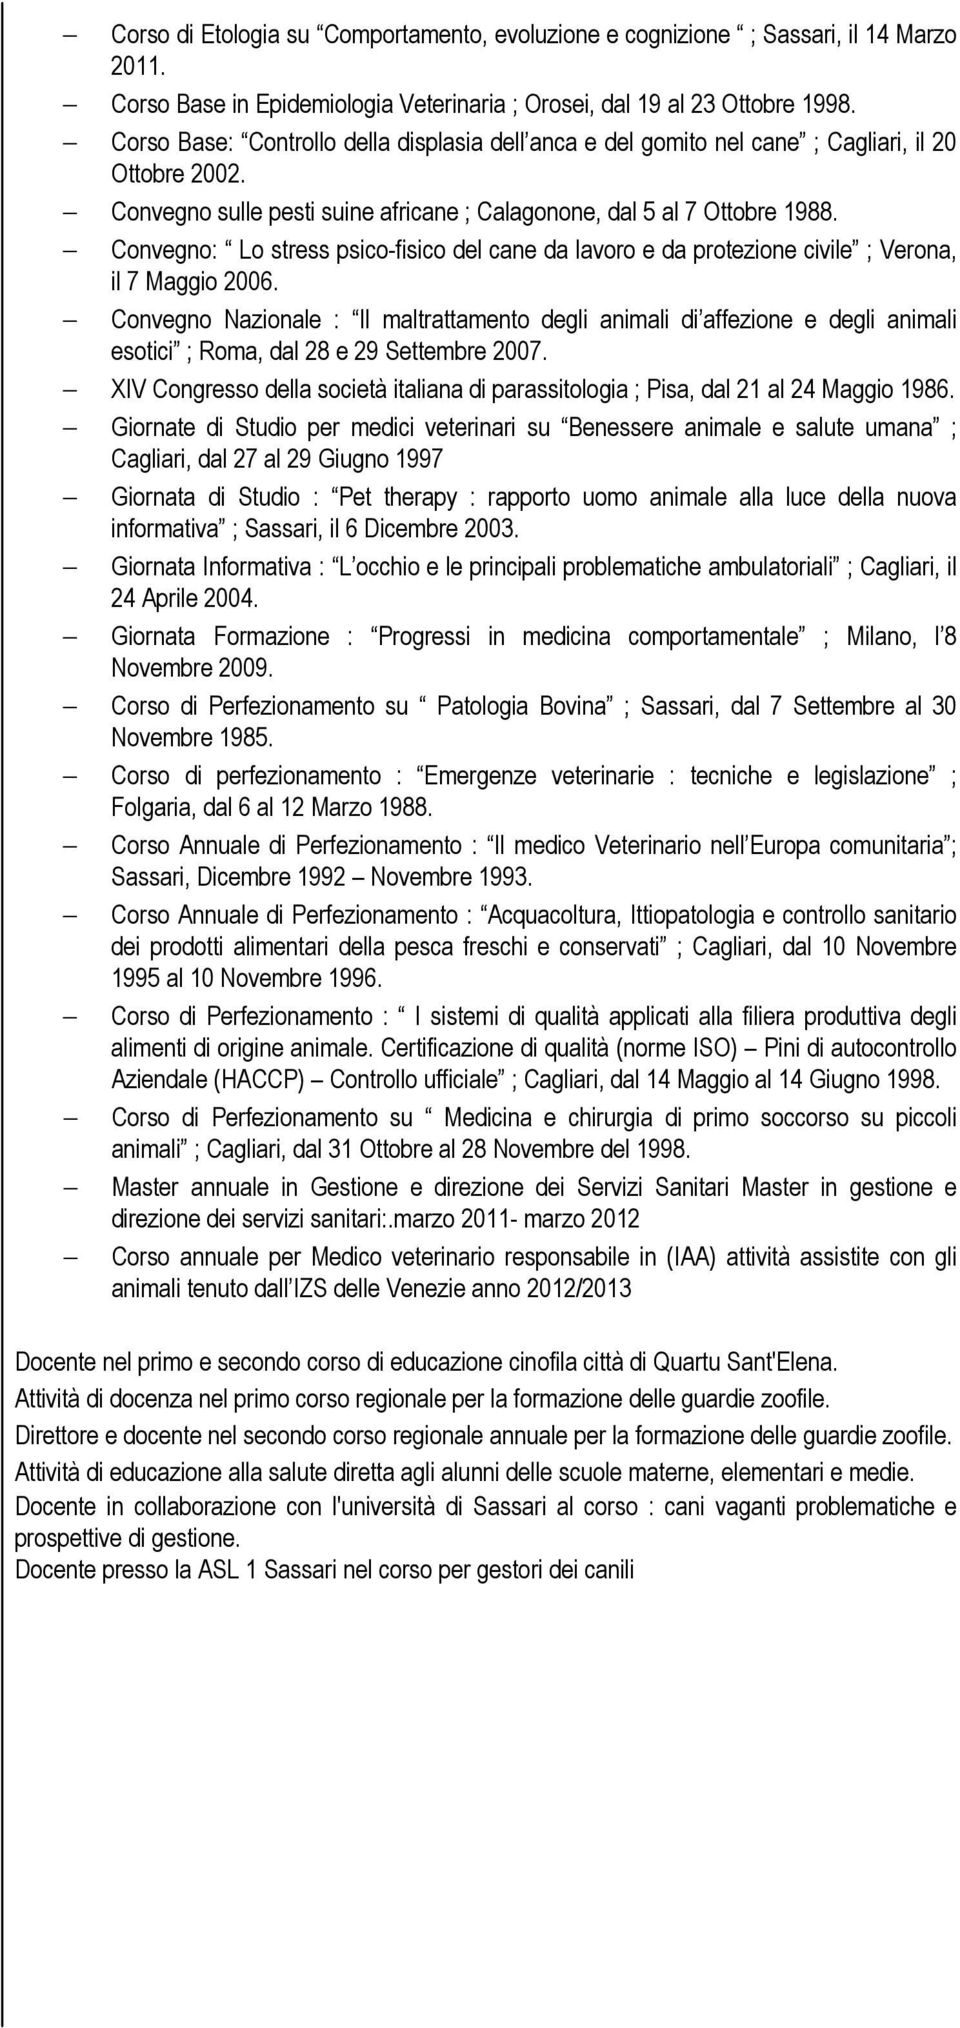 Convegno: Lo stress psico-fisico del cane da e da protezione civile ; Verona, il 7 Maggio 2006.